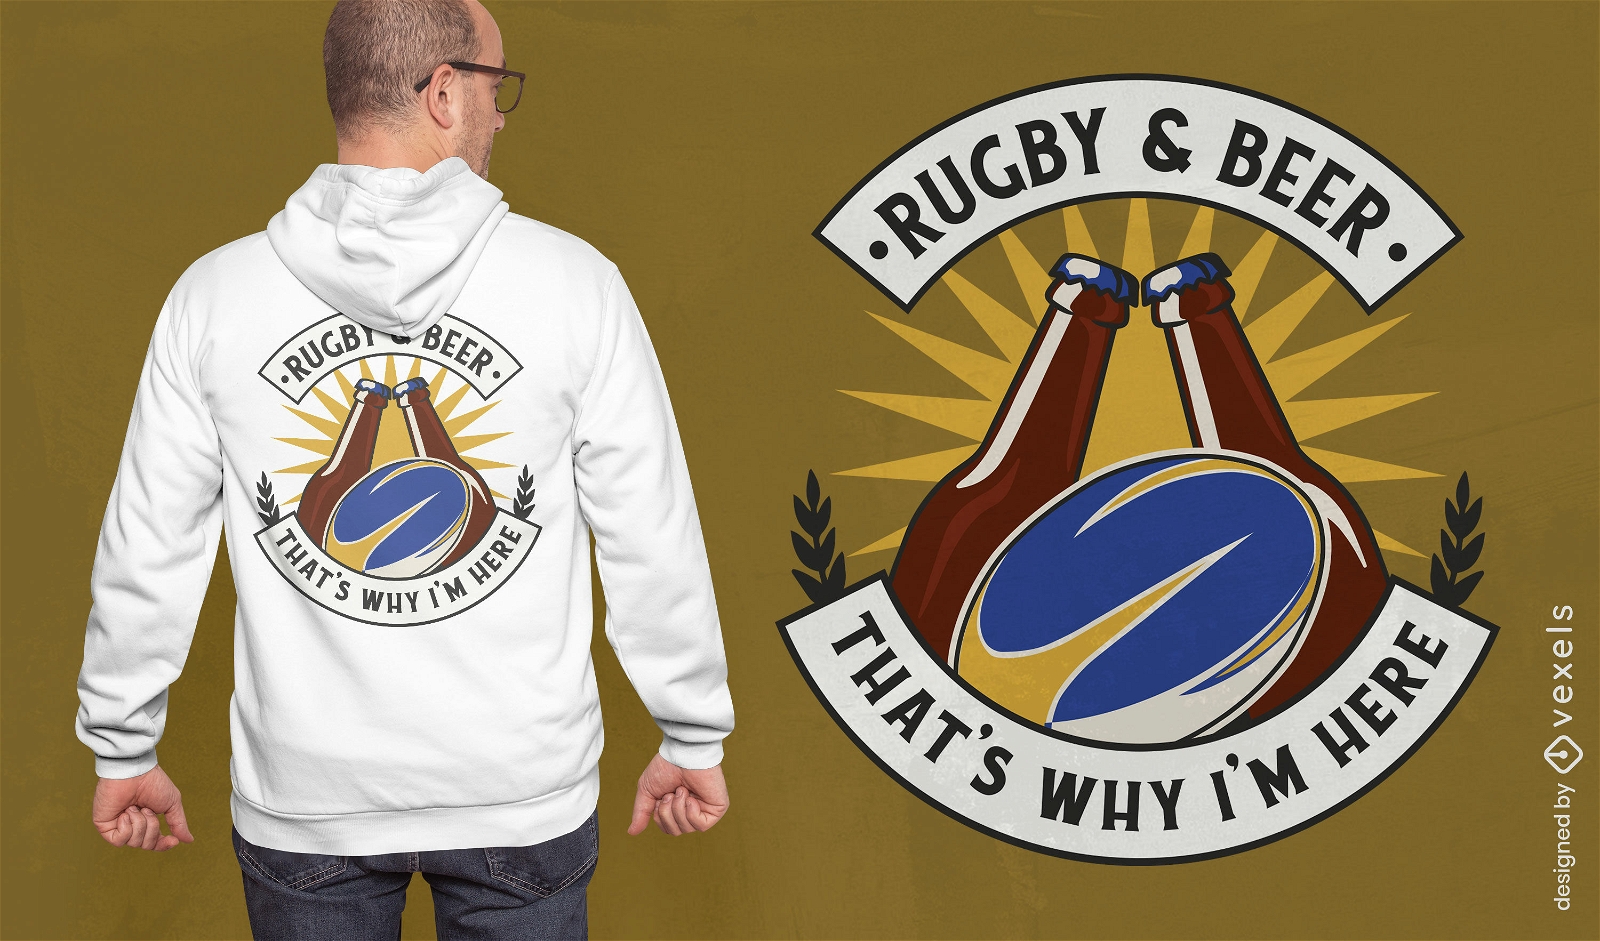 Dise?o de camiseta de rugby y cerveza.